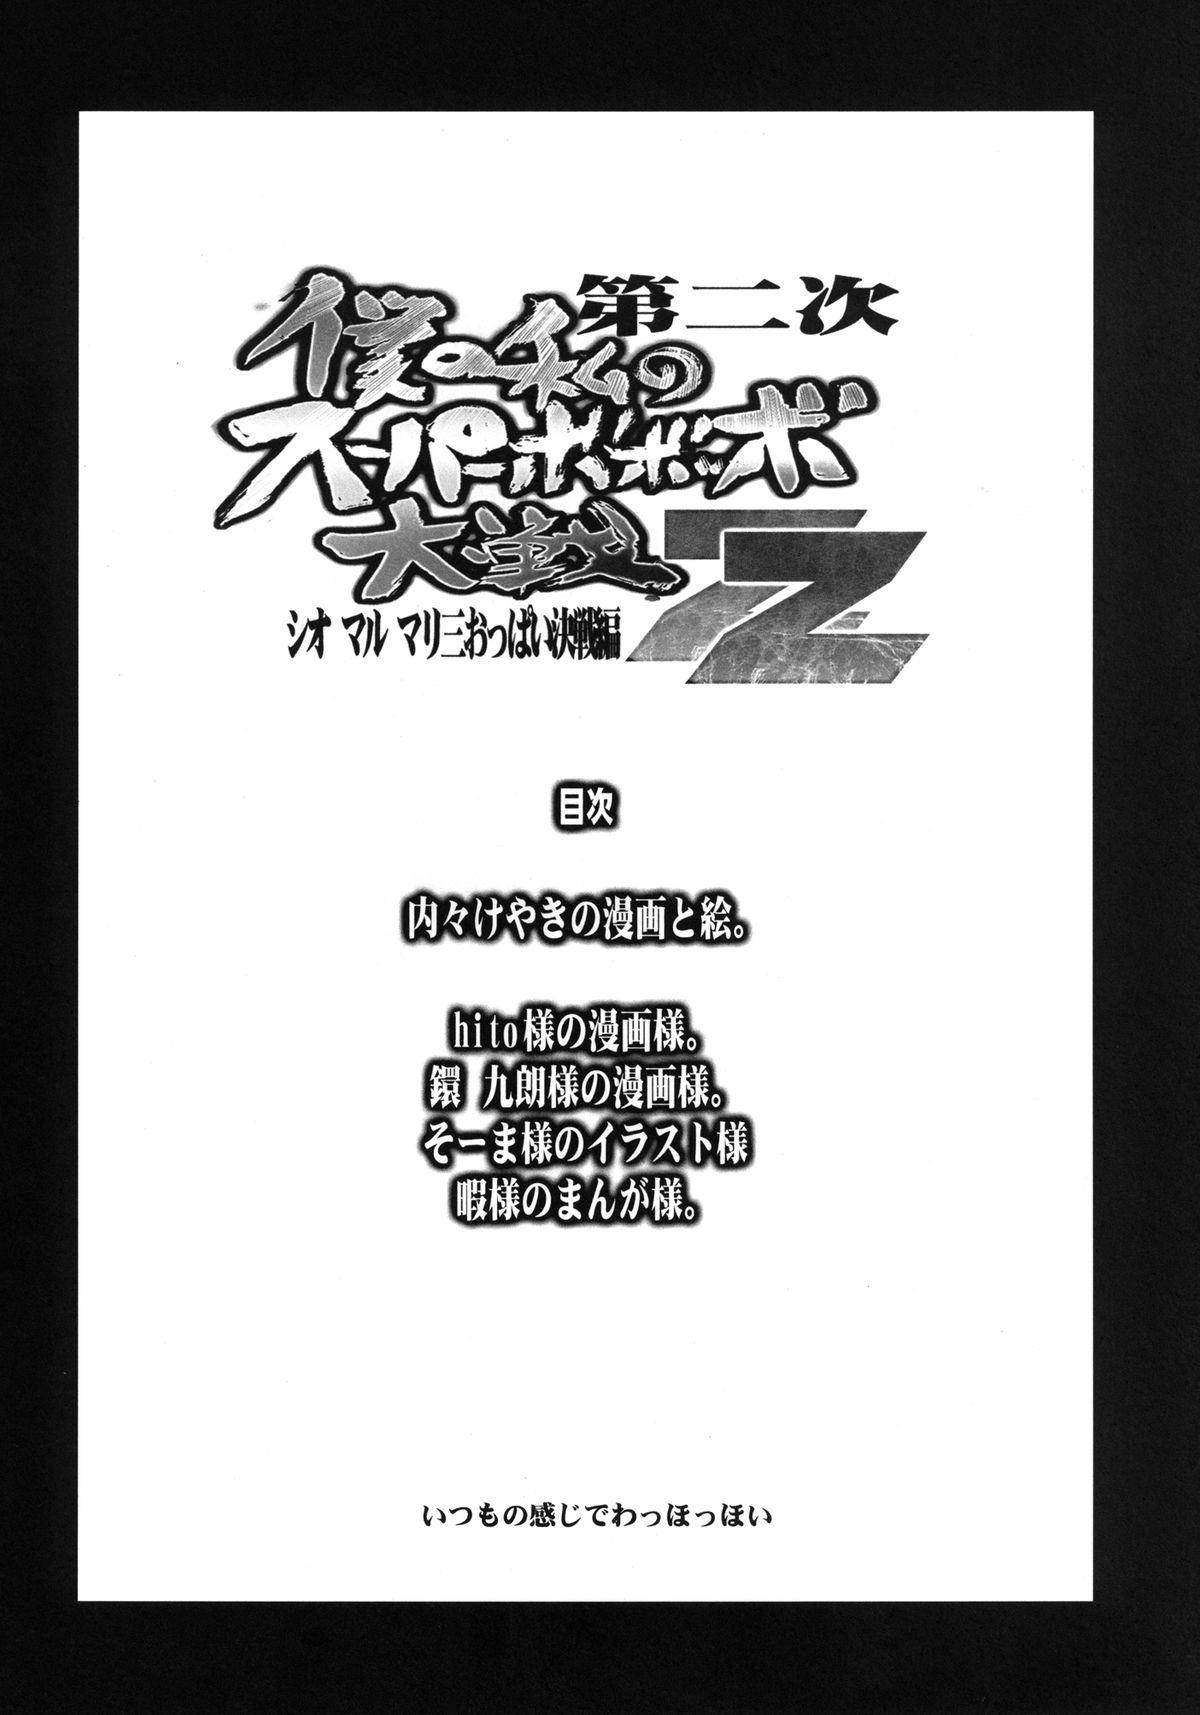 Longhair Dainiji Boku no Watashi no Super Bobobbo Taisen ZZ - Cio Mar Mari 3 Oppai Kessen hen - Super robot wars Milf - Page 4